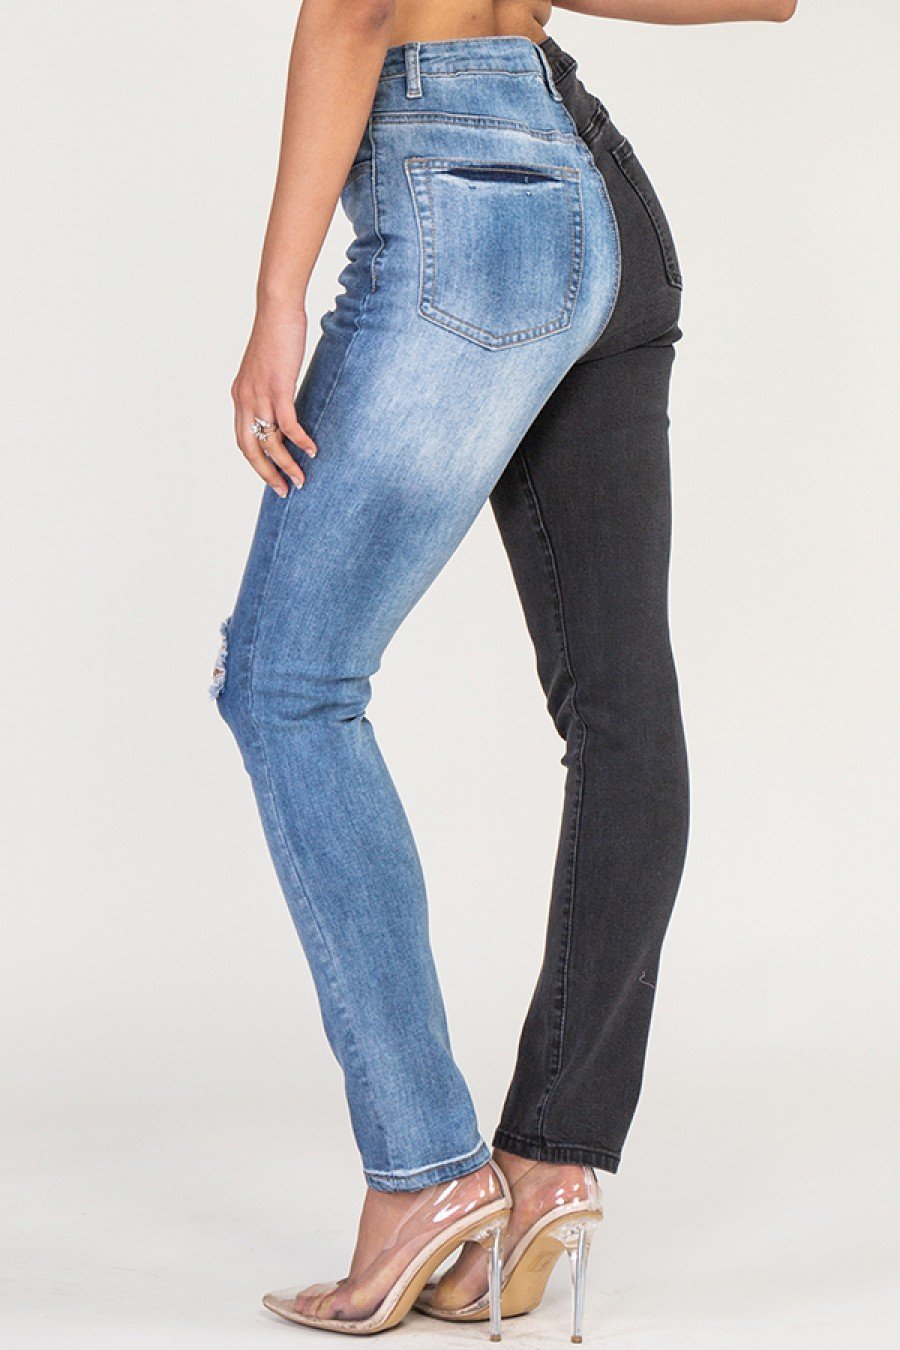 Duo Jeans - SurgeStyle Boutique